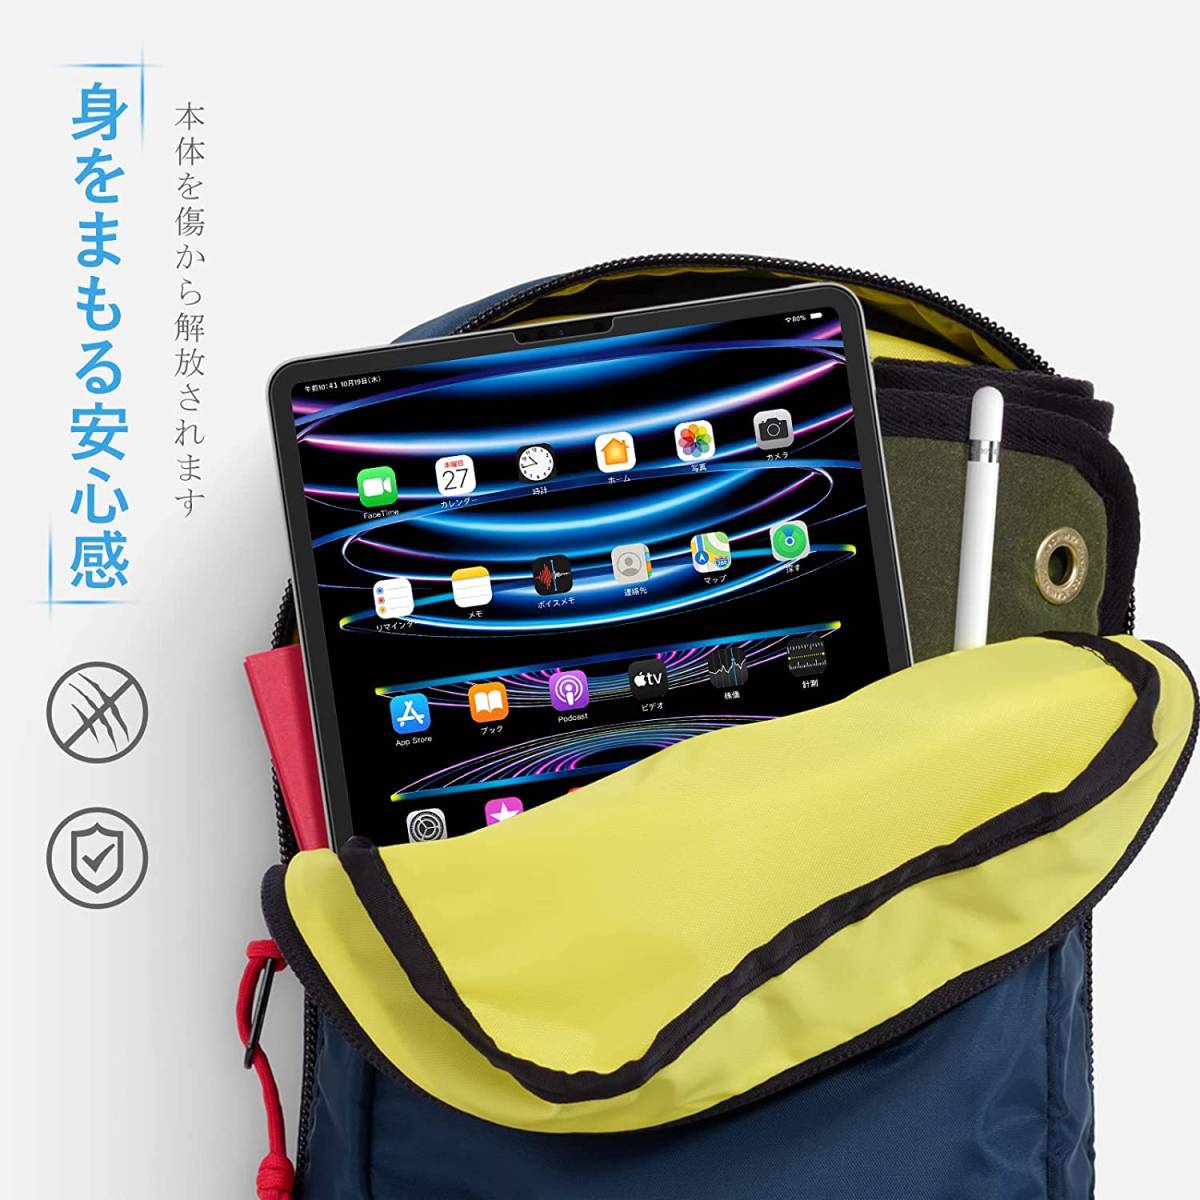 日本製 旭硝子 素材 9H硬度 専用ガイド枠 2022 iPad Pro 11インチ 第4世代 iPad Air 4 / 5 apple pencil 対応 画面 保護 ガラス フィルム_画像7